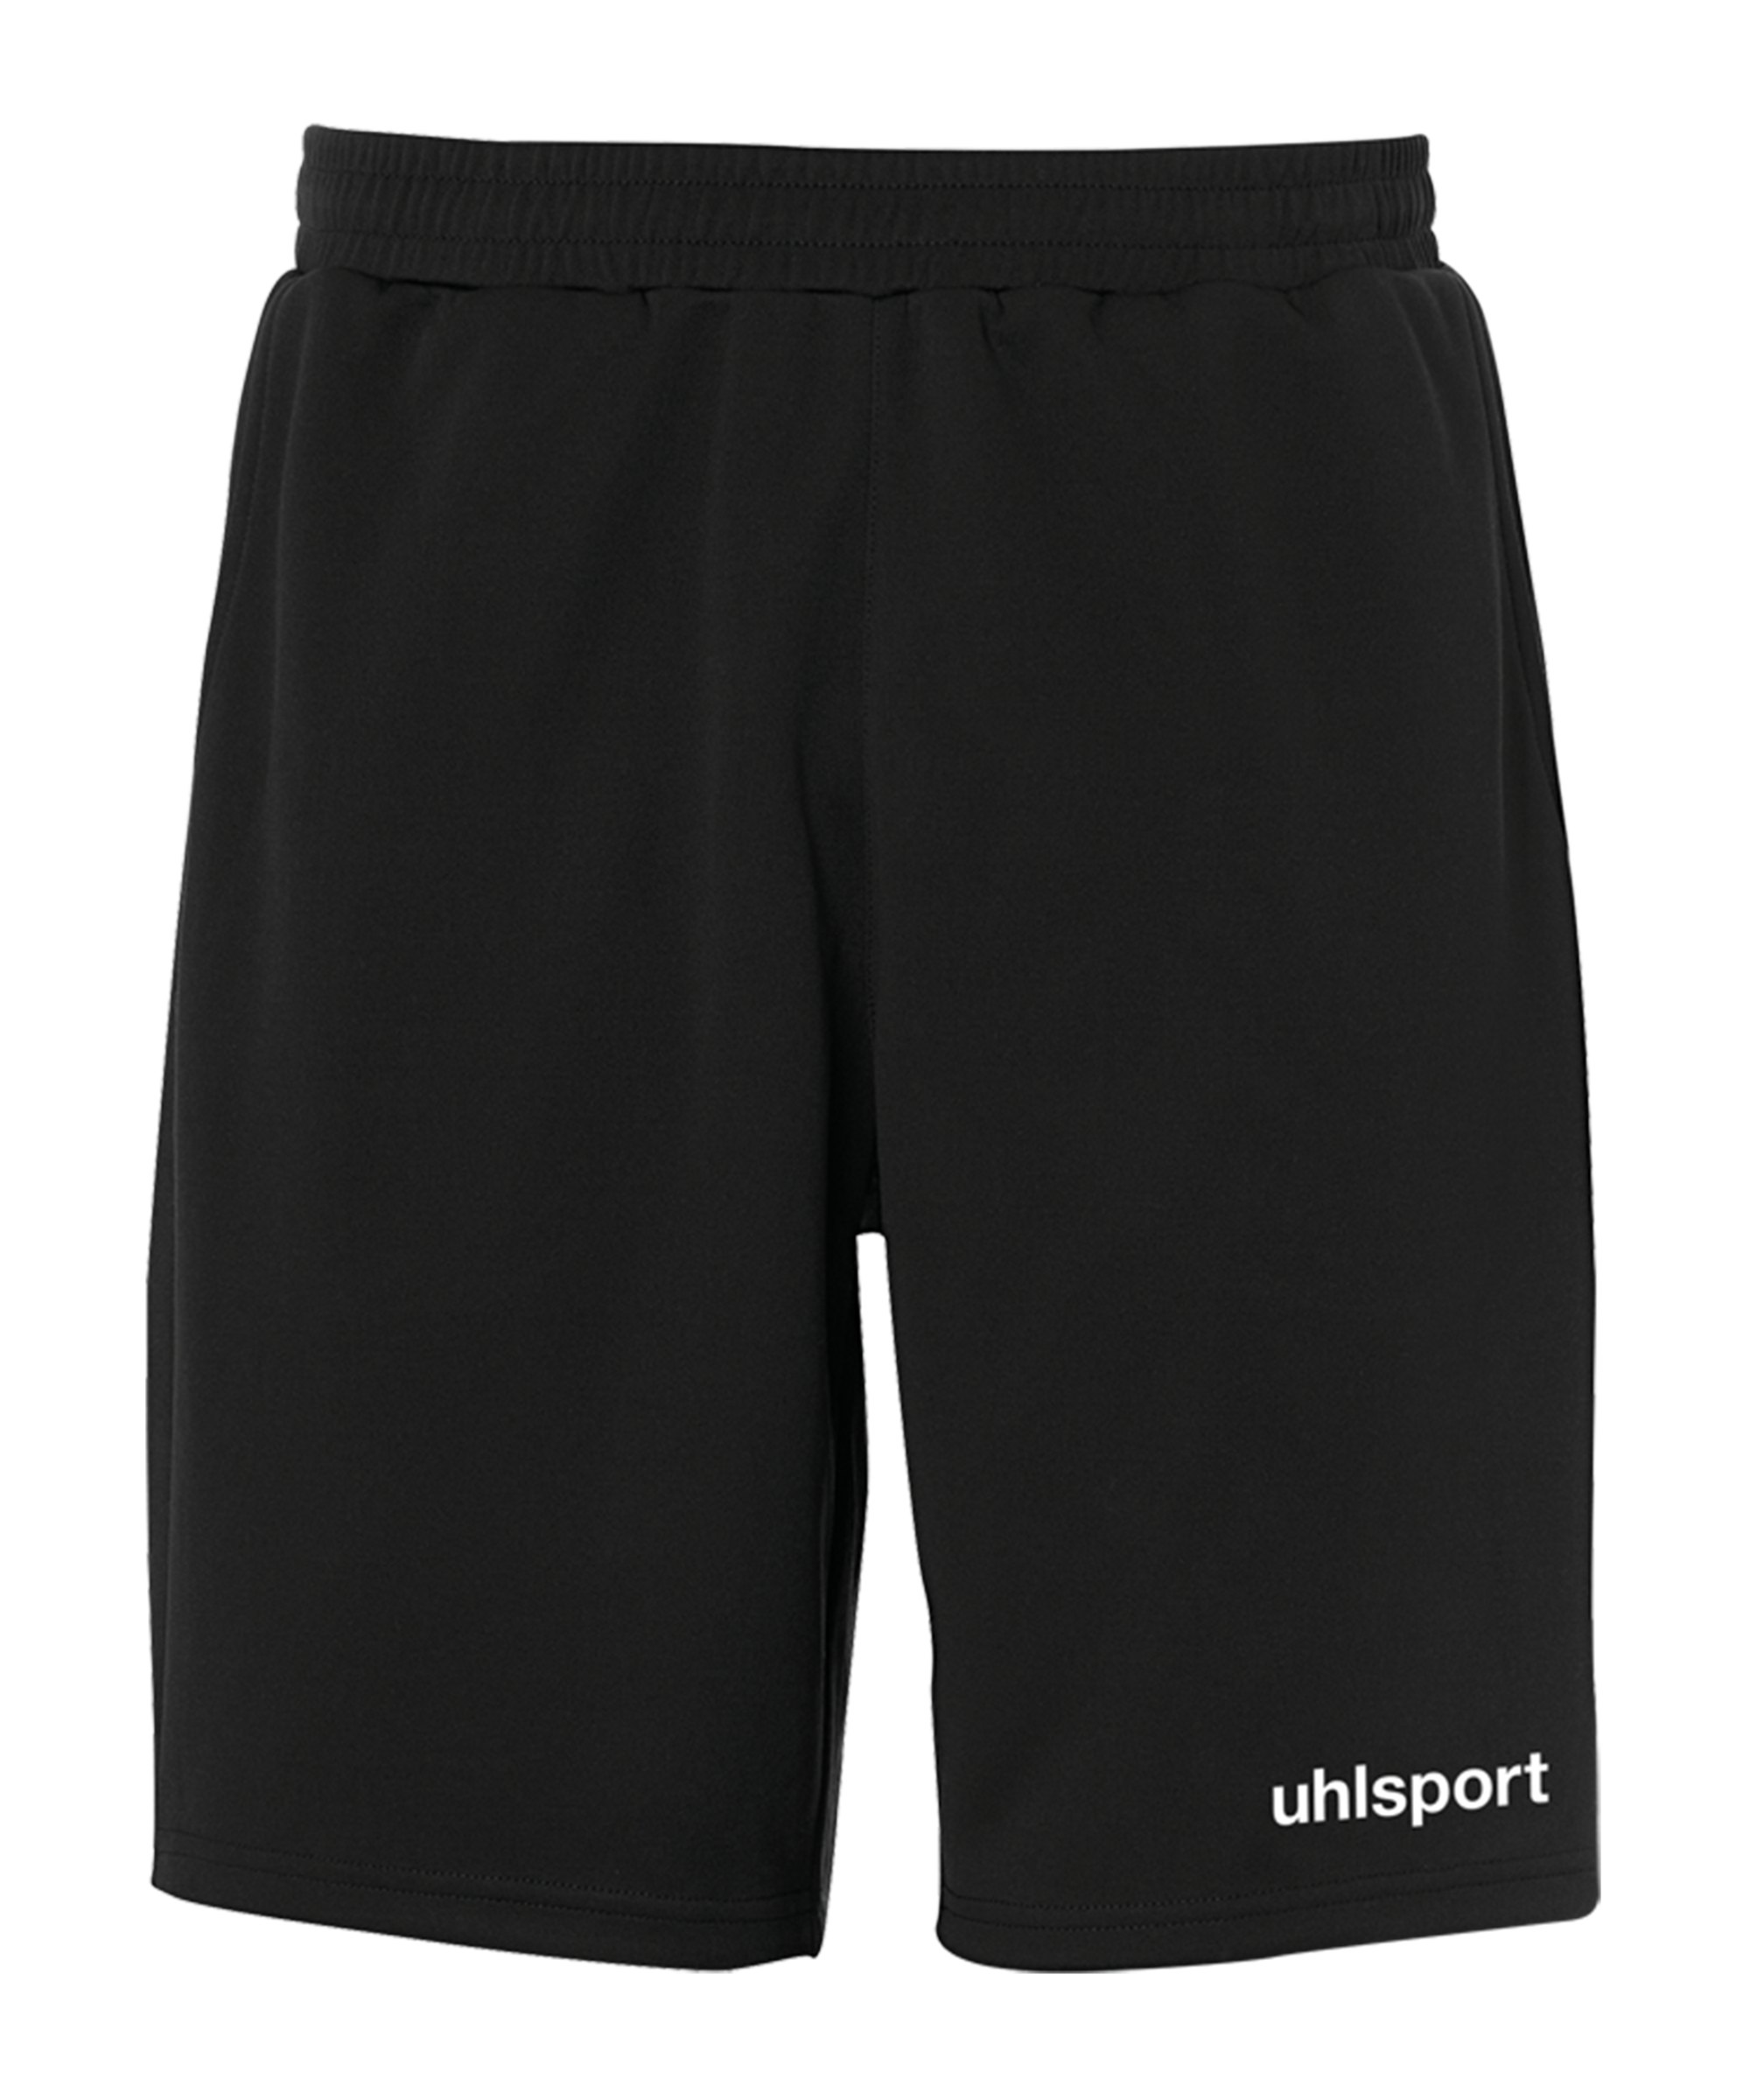 Uhlsport Essential PES-Short Kids Schwarz F01 - schwarz